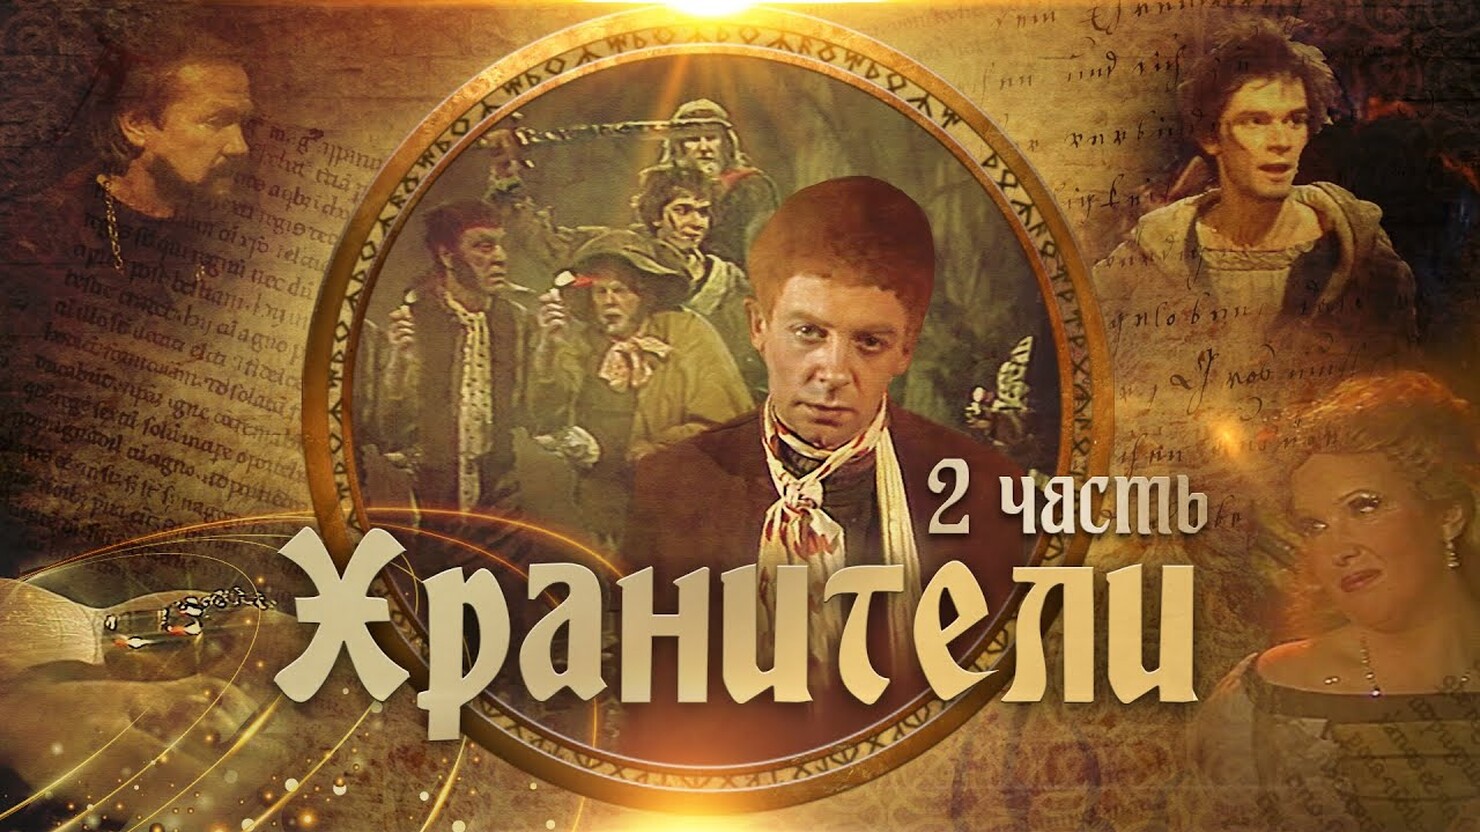 "Хранители" нашлись! Считавшийся утерянным советский спектакль по "Властелину колец" выложили в сеть